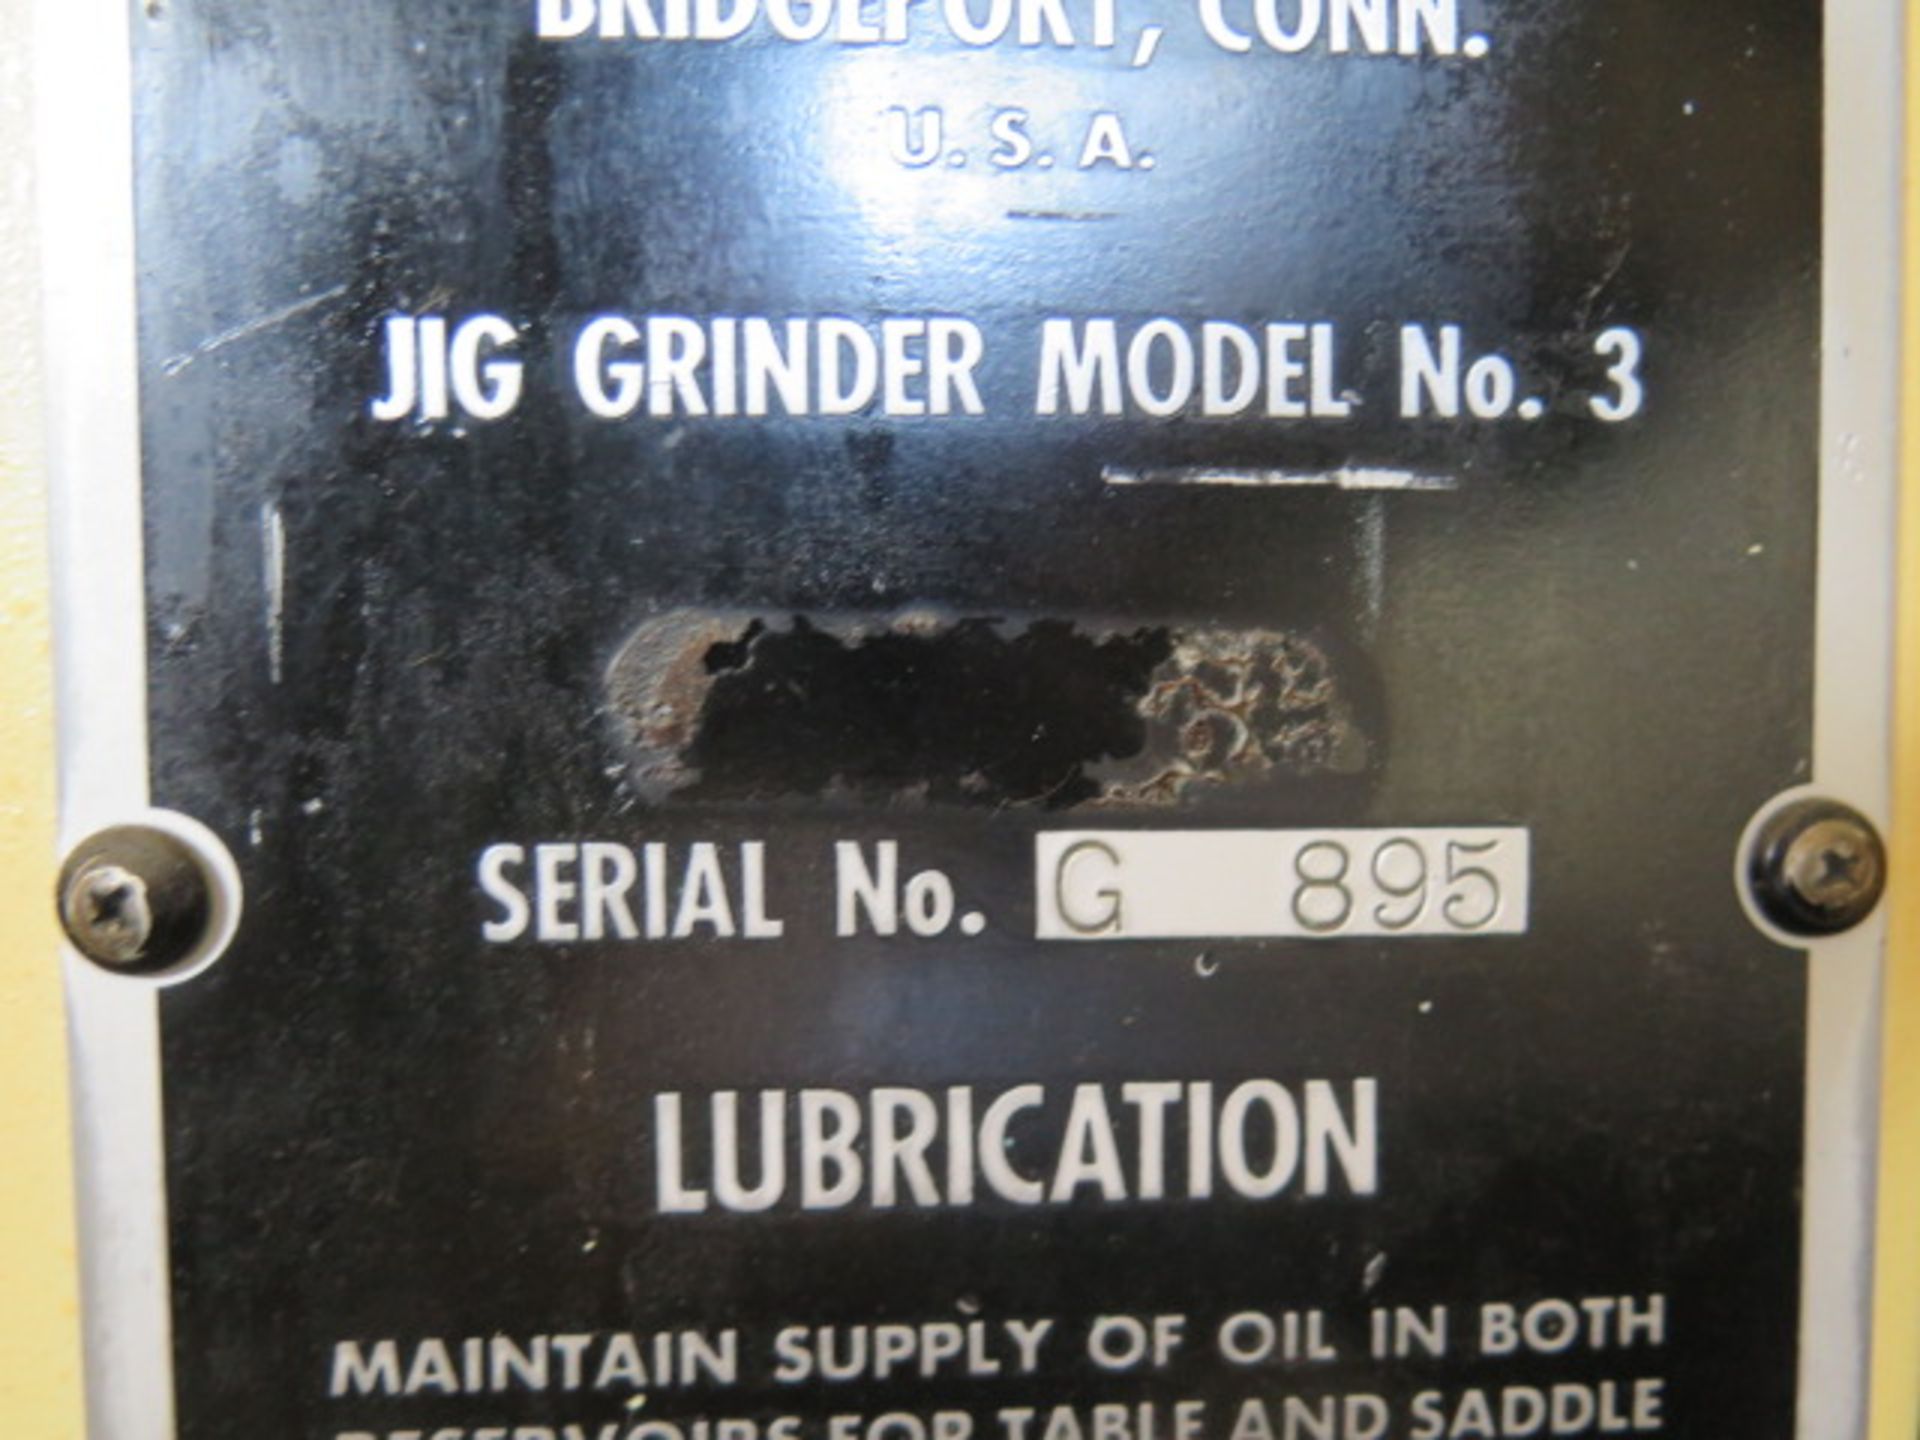 Moore No. 3 Jig Grinder s/n G895 w/ Heidenhain DRO, Pneumatic Grinding Head, 11" x 24", SOLD AS IS - Image 14 of 14